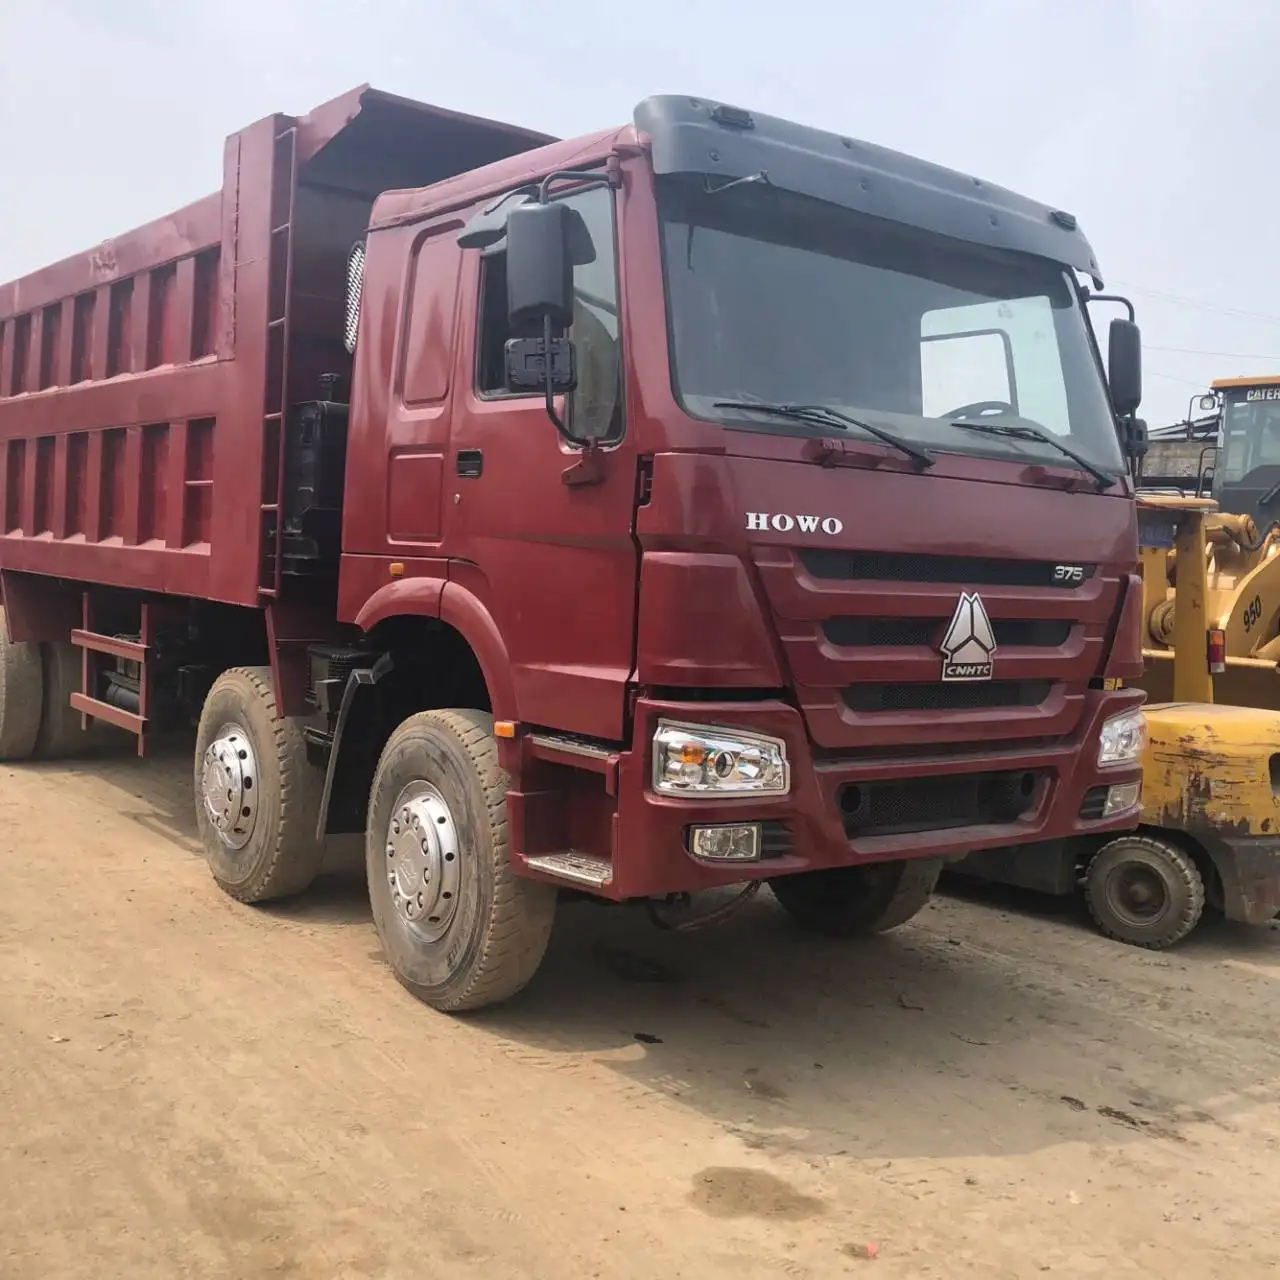 Prezzo promozionale sinotruk ha usato il camion del trattore howo 375 in vendita